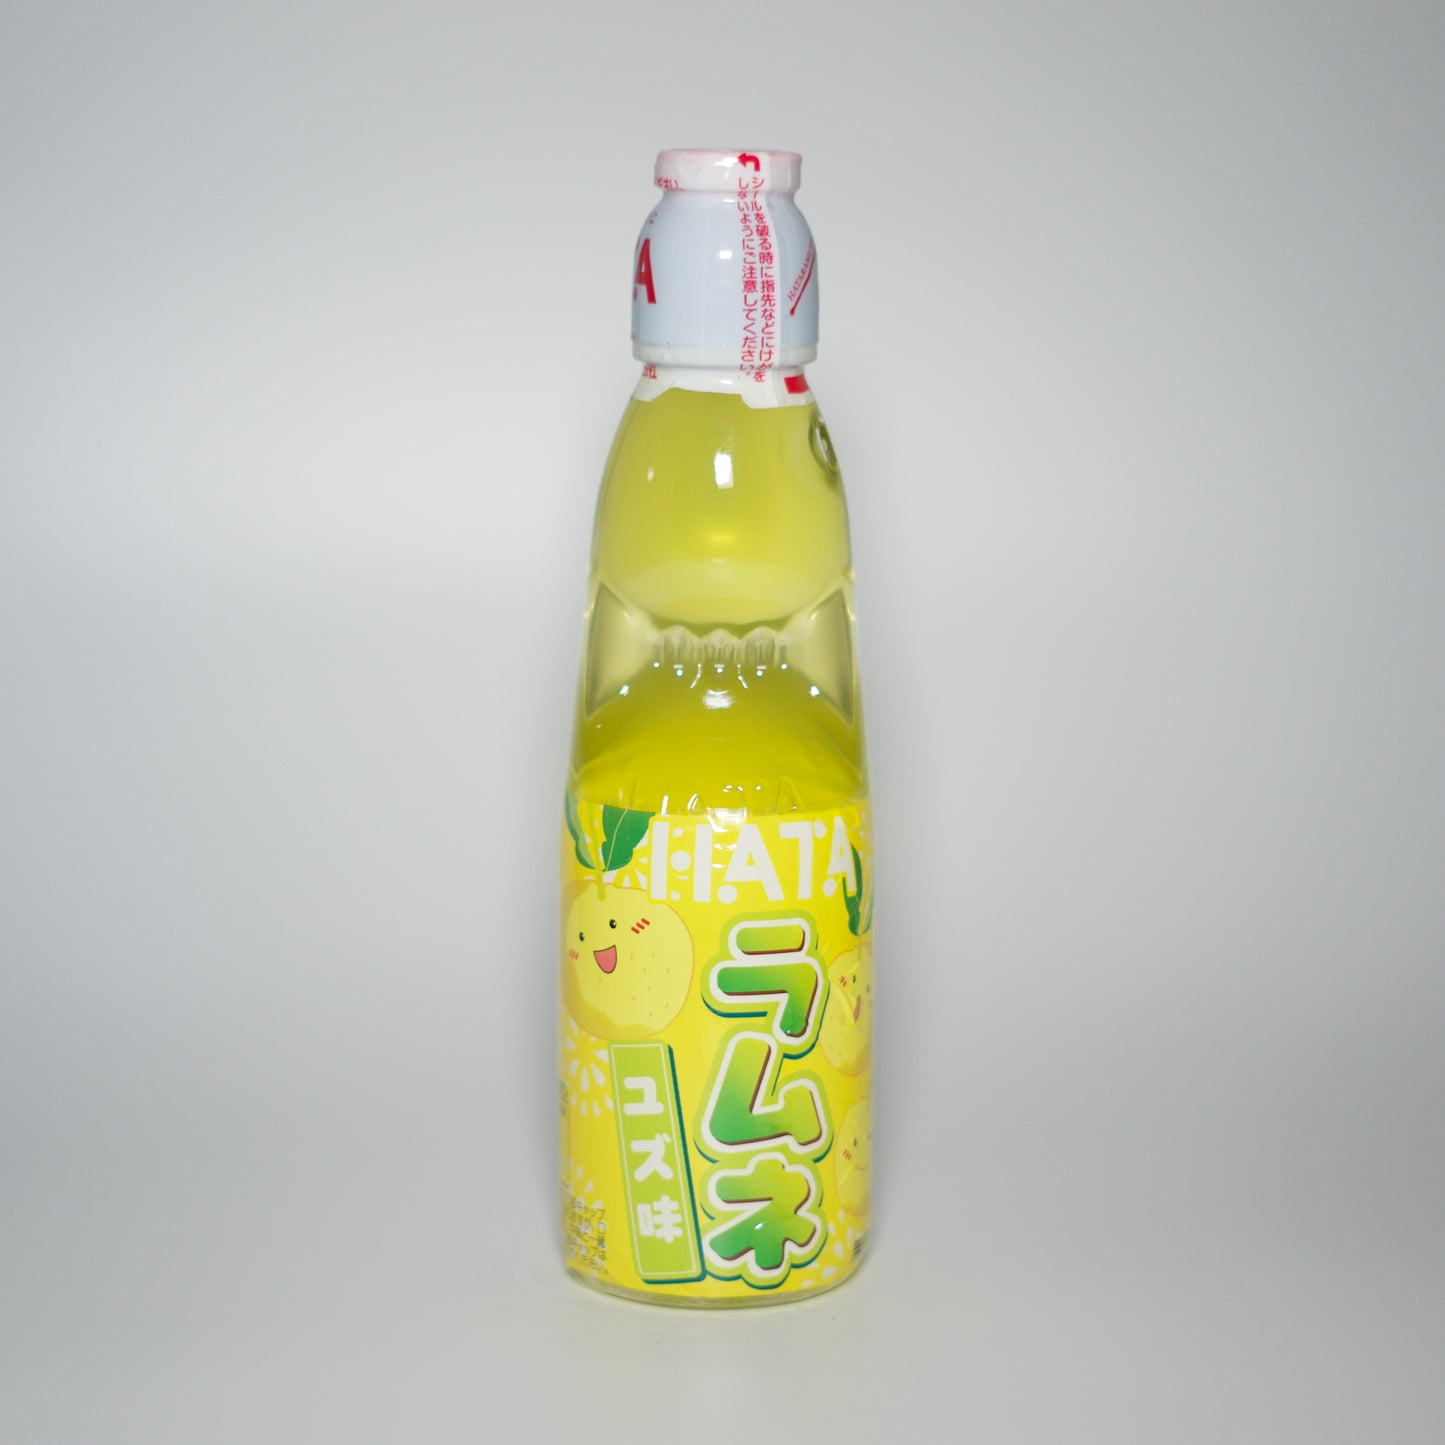 Hatakosen Ramune Soda - Yuzu Flavour 200ml